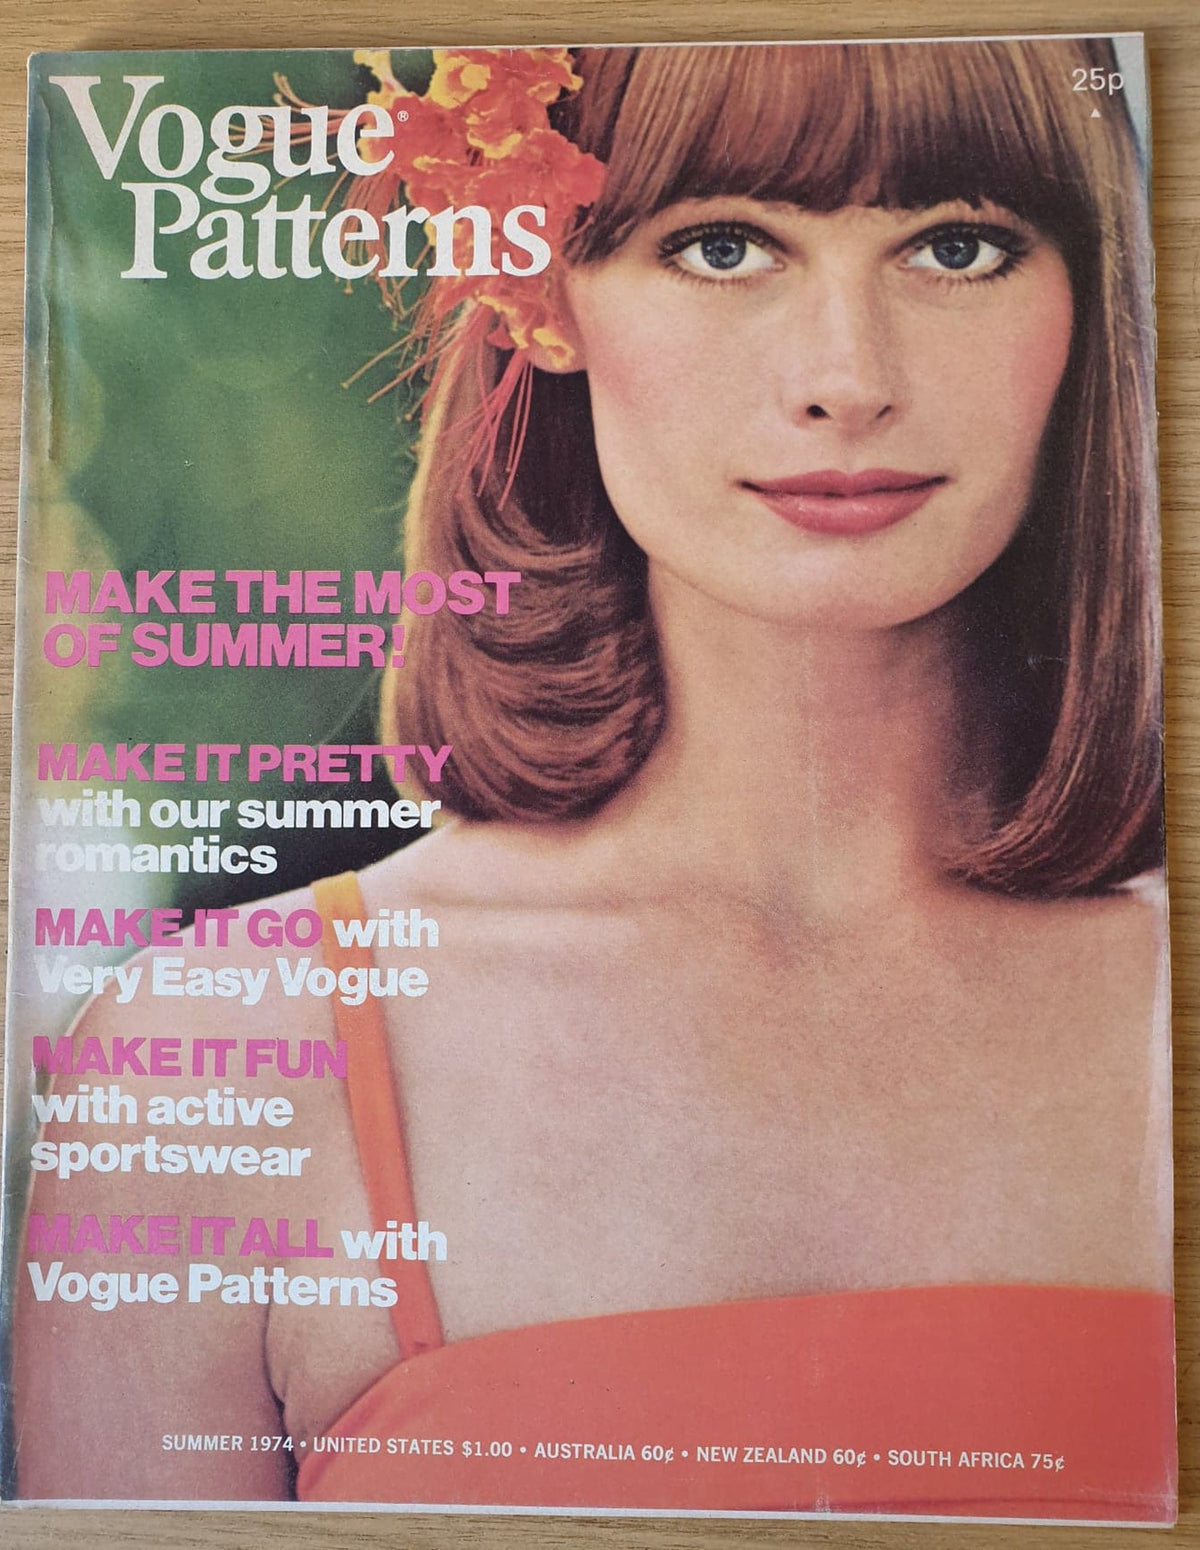 Vogue Patterns Book Summer 1974 Original Vintage Retro Rare Fashion Magazine Regalo Regalo de cumpleaños